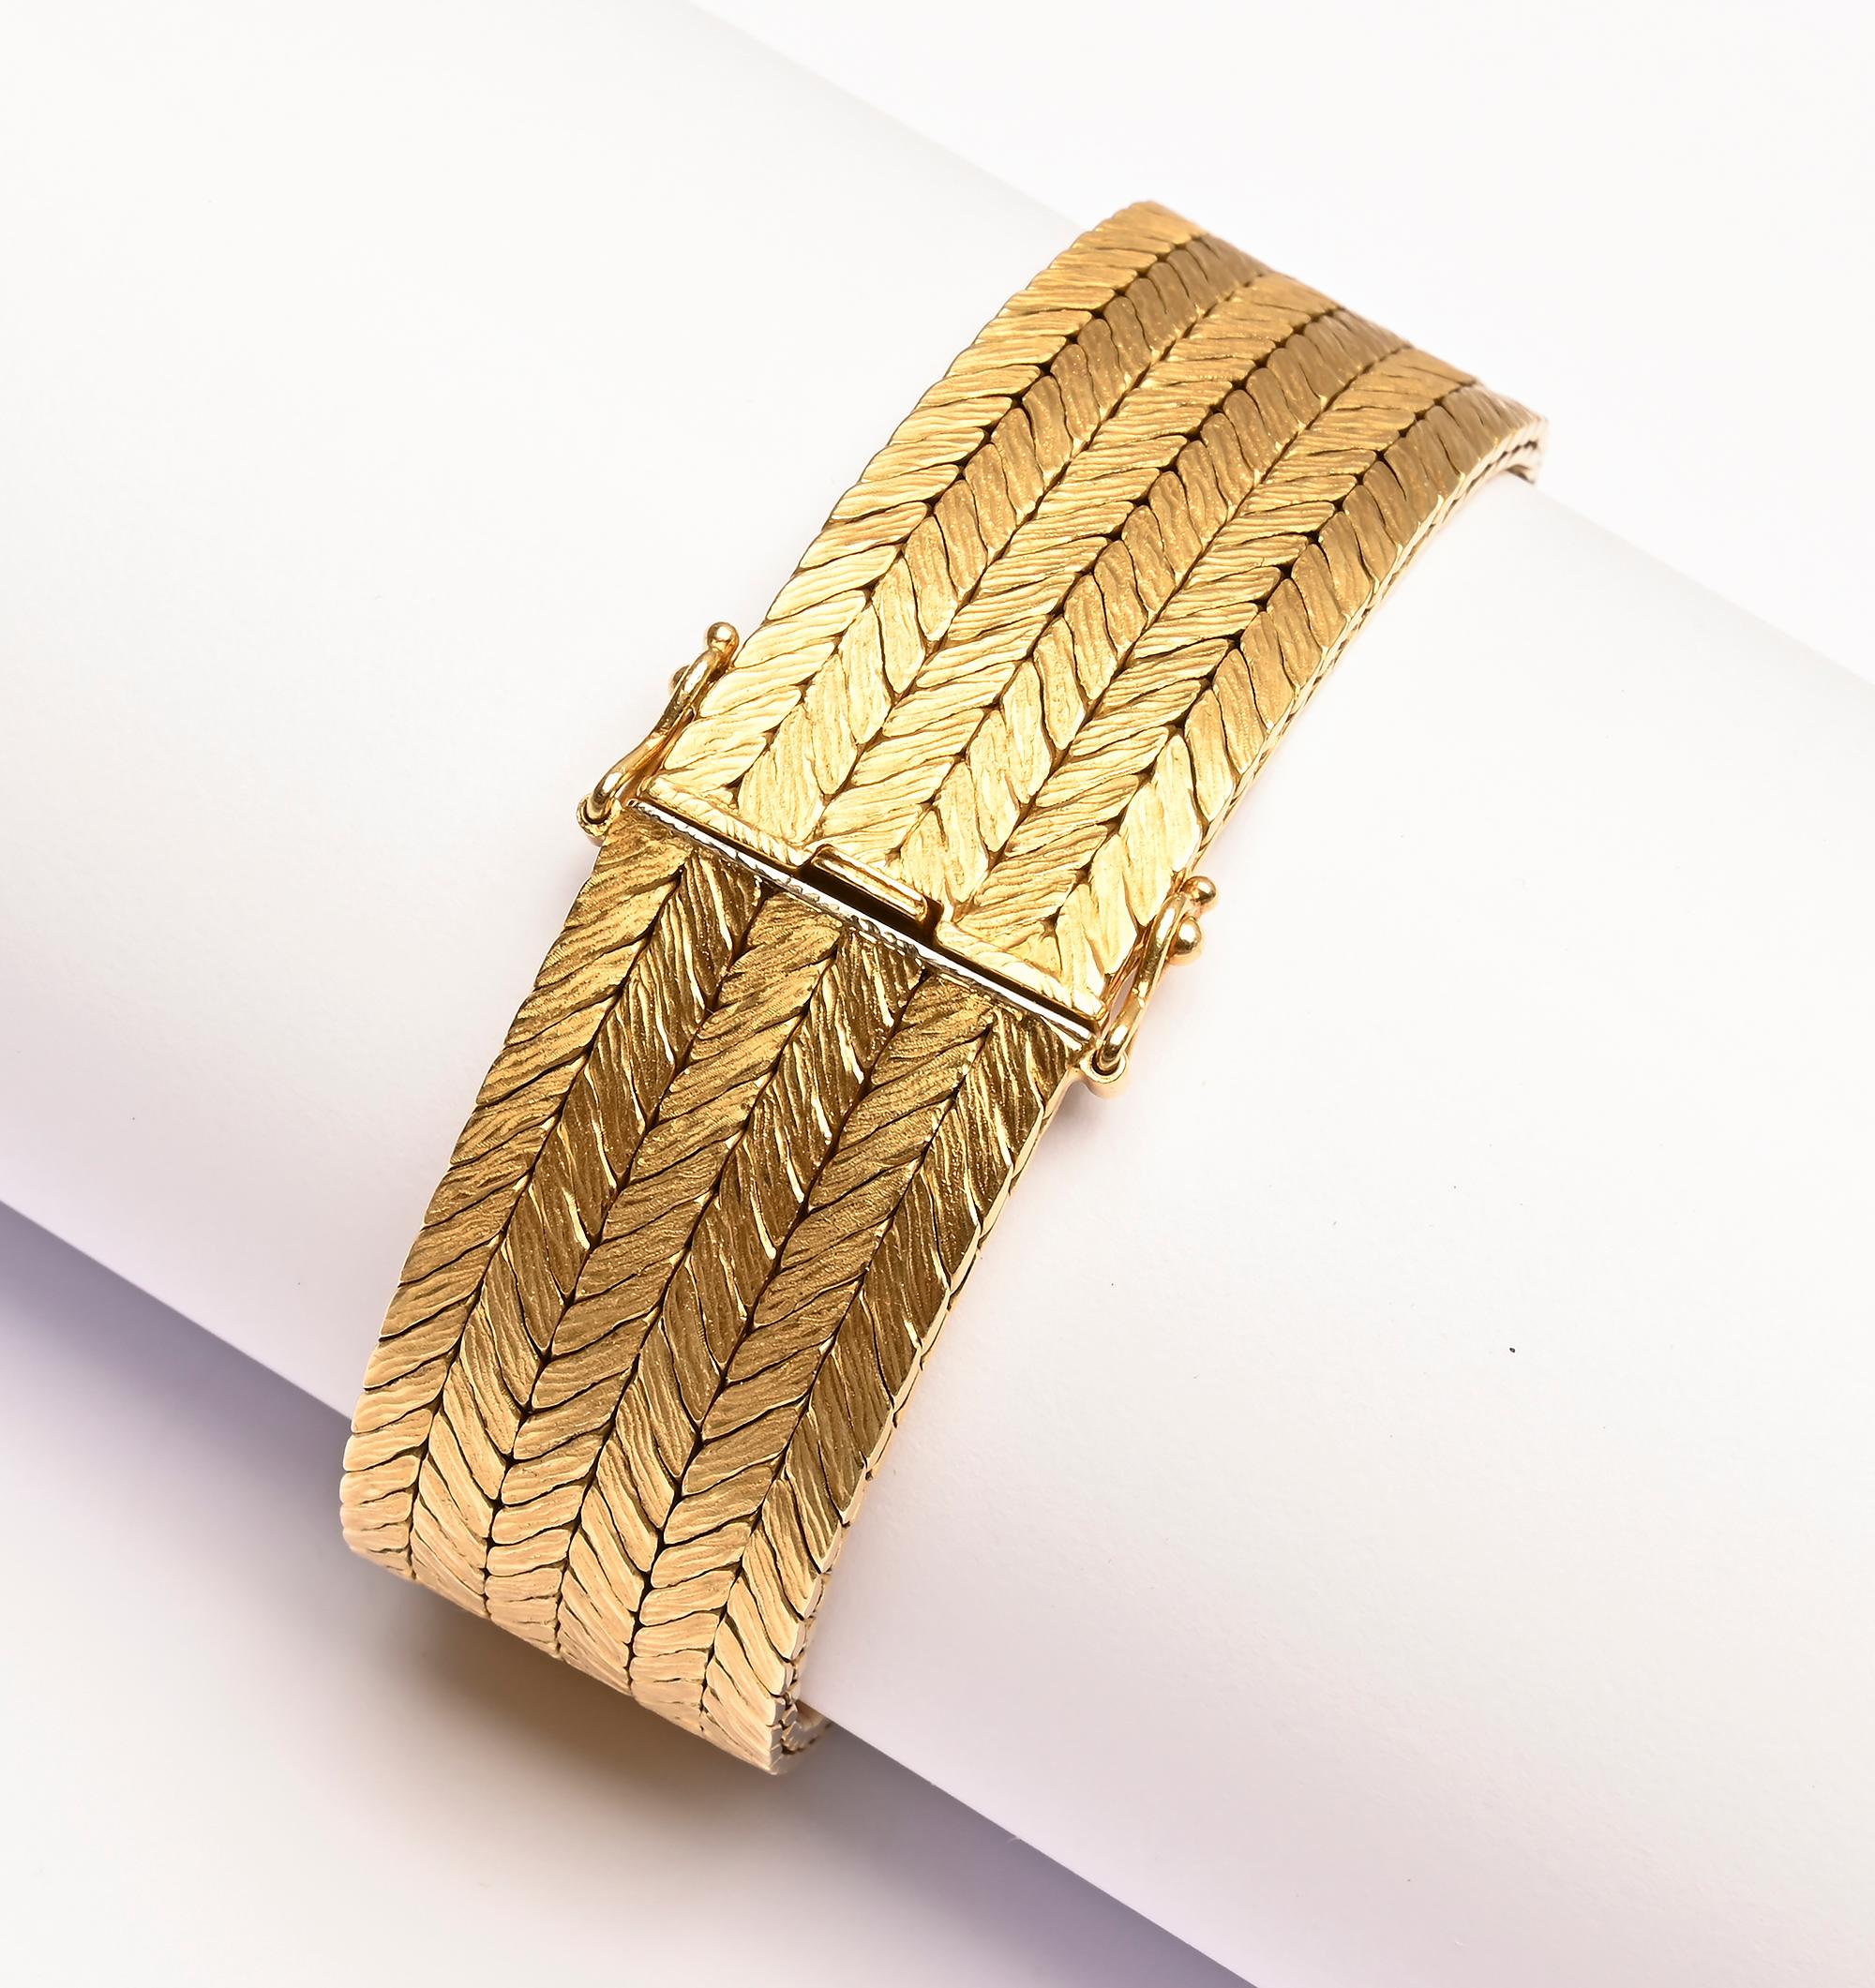 Bracelet en or 18 carats de fabrication exquise, finement tissé, signé Tiffany. Il a été fabriqué en Allemagne de l'Ouest, qui a existé en tant que telle de 1945 à 1990. Le bracelet est tissé serré sur six rangs. Il a une finition légèrement